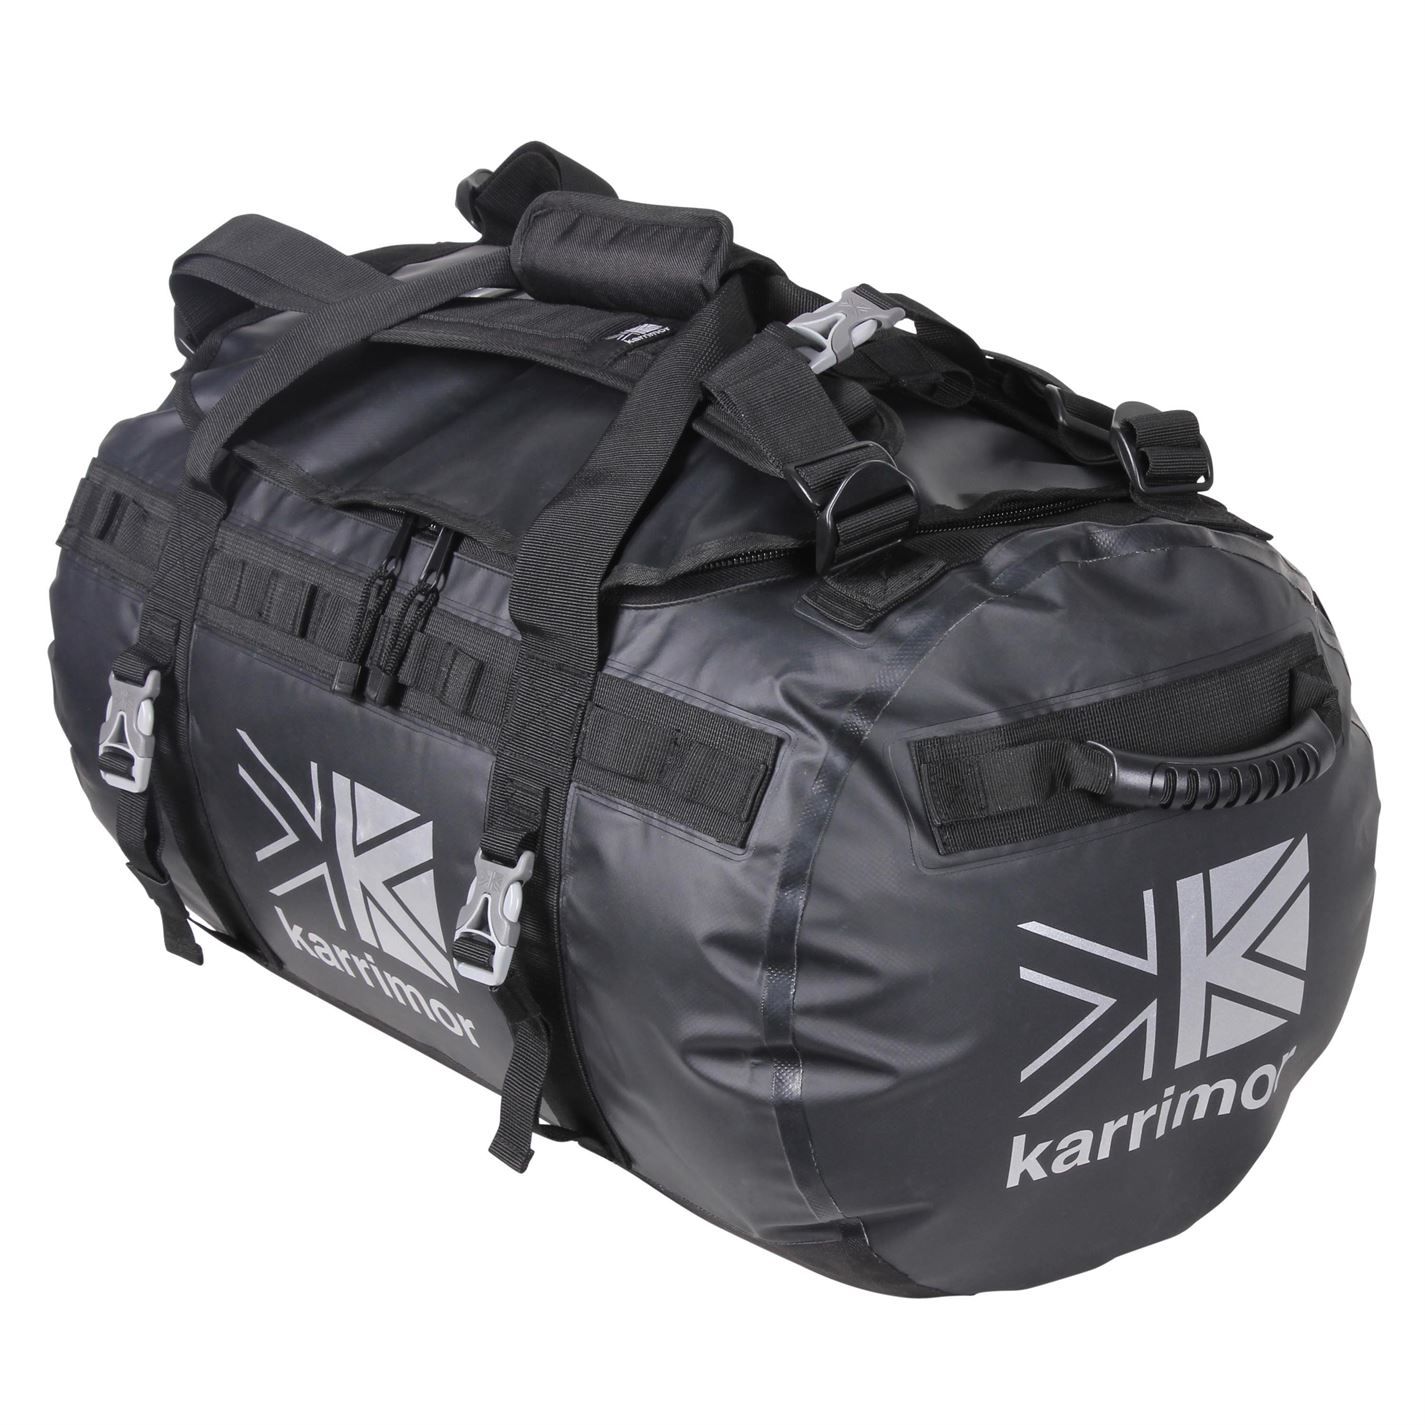 Karrimor 70L Dufflebag Adjustable Shoulder Straps Padded Carry Handle Zipped